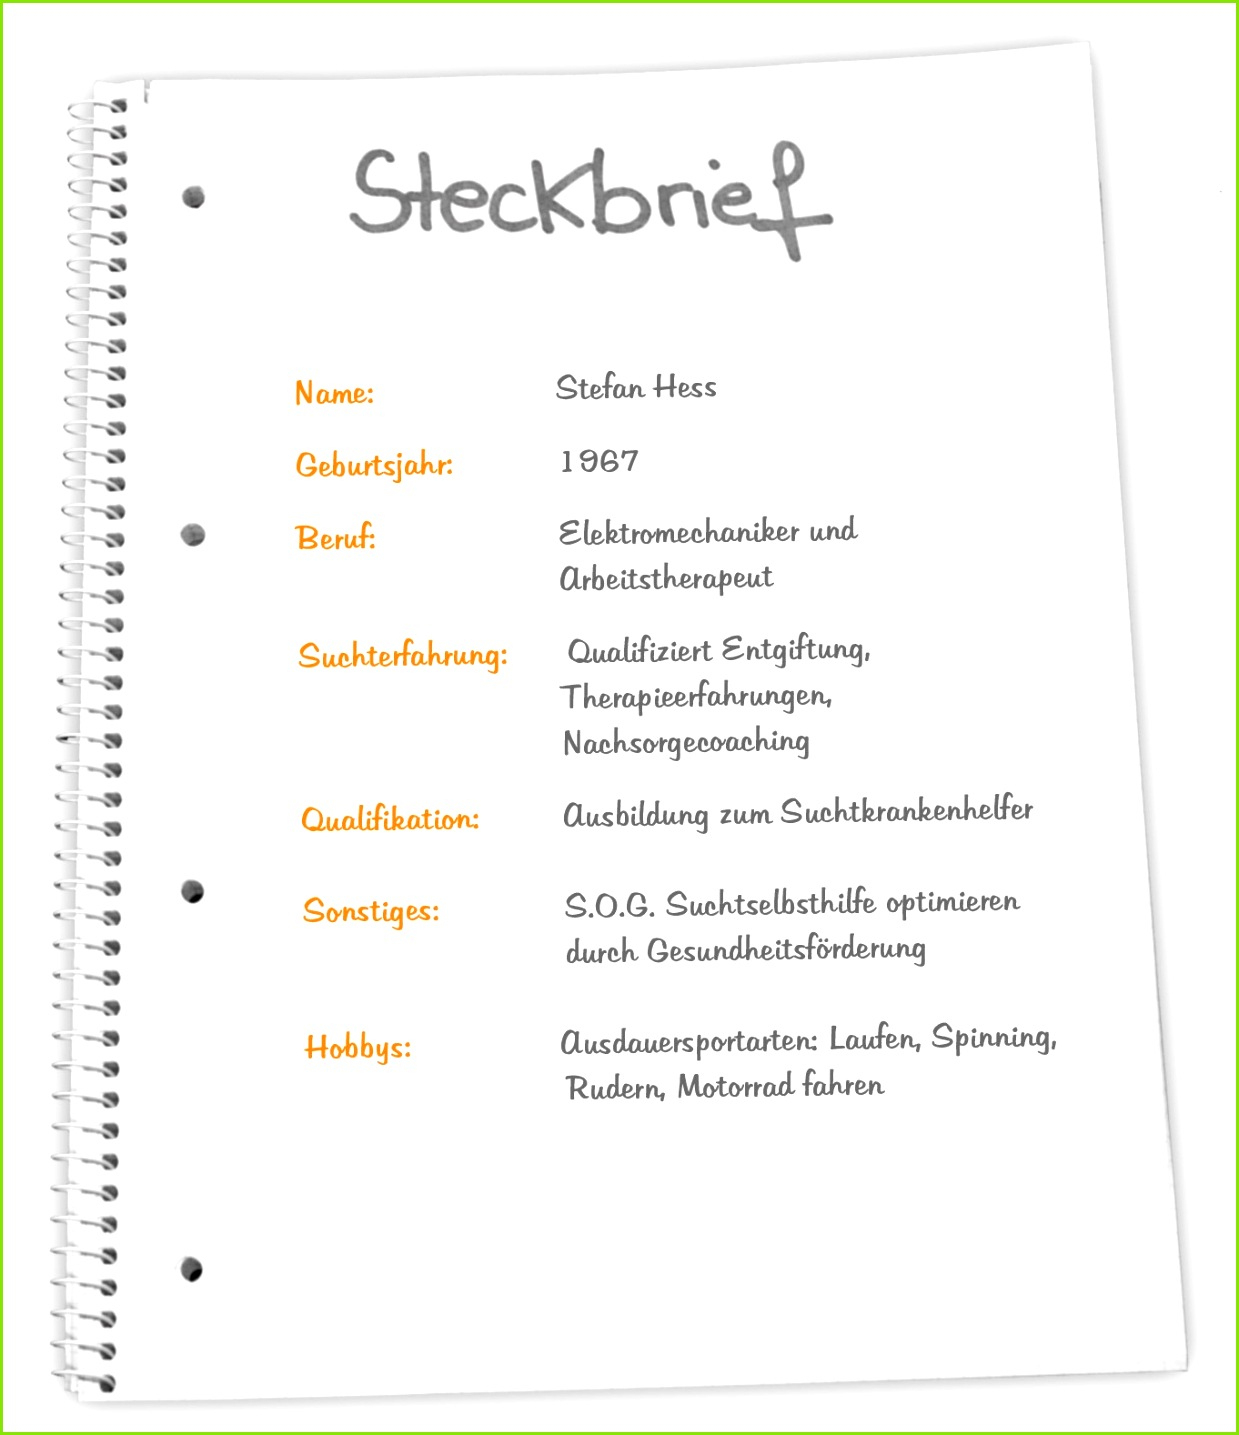 6 Steckbrief Erzieherin Kindergarten Vorlage - Meltemplates - Meltemplates à Erzieher Steckbrief